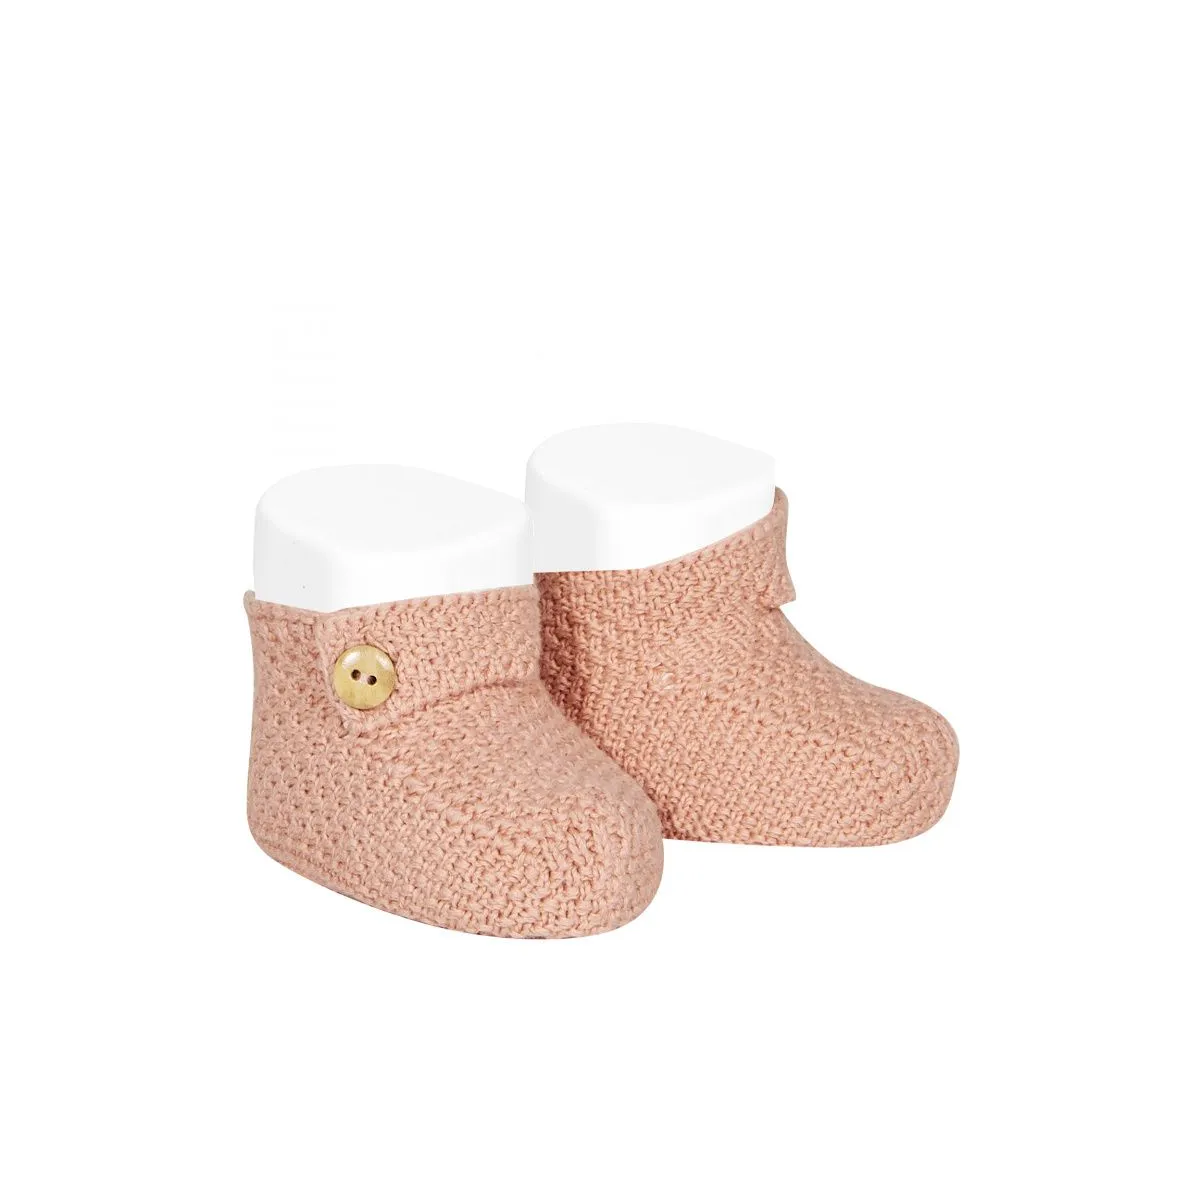 CONDOR - Mottled cotton baby booties